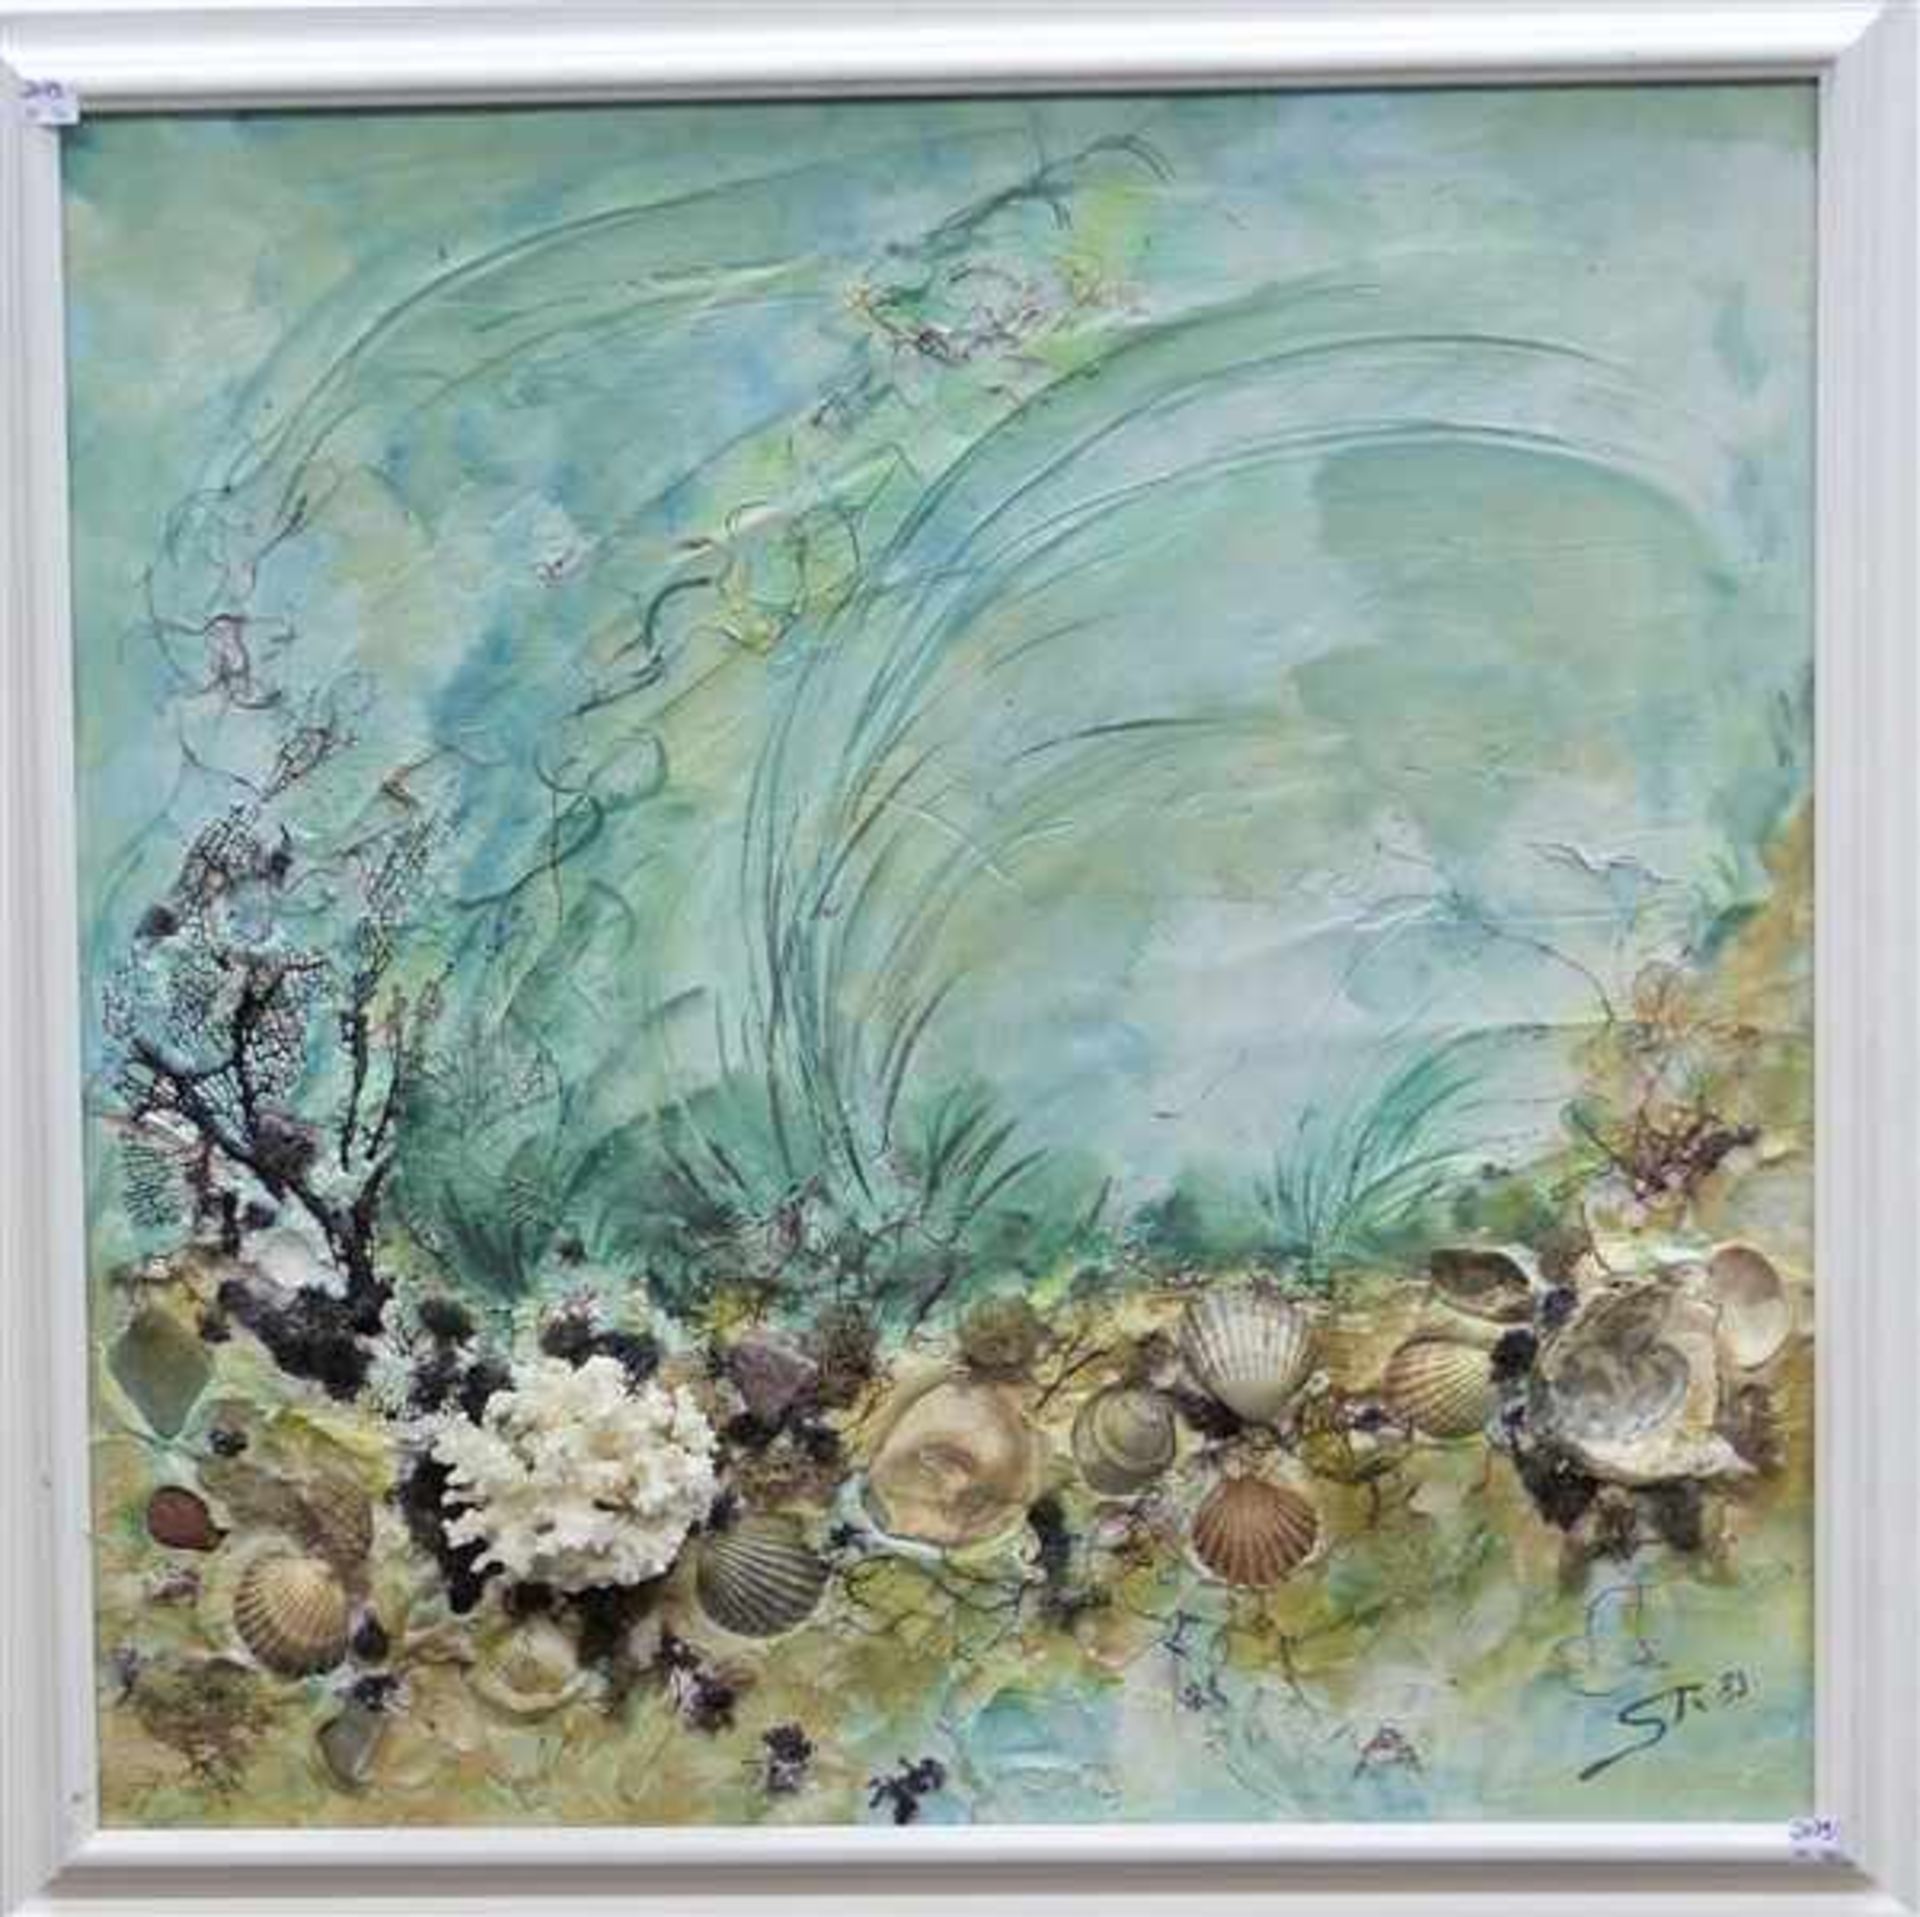 GemäldecollageMonogrammist ST, Darstellung der Unterwasserwelt mit Muscheln und Steinen, rechst